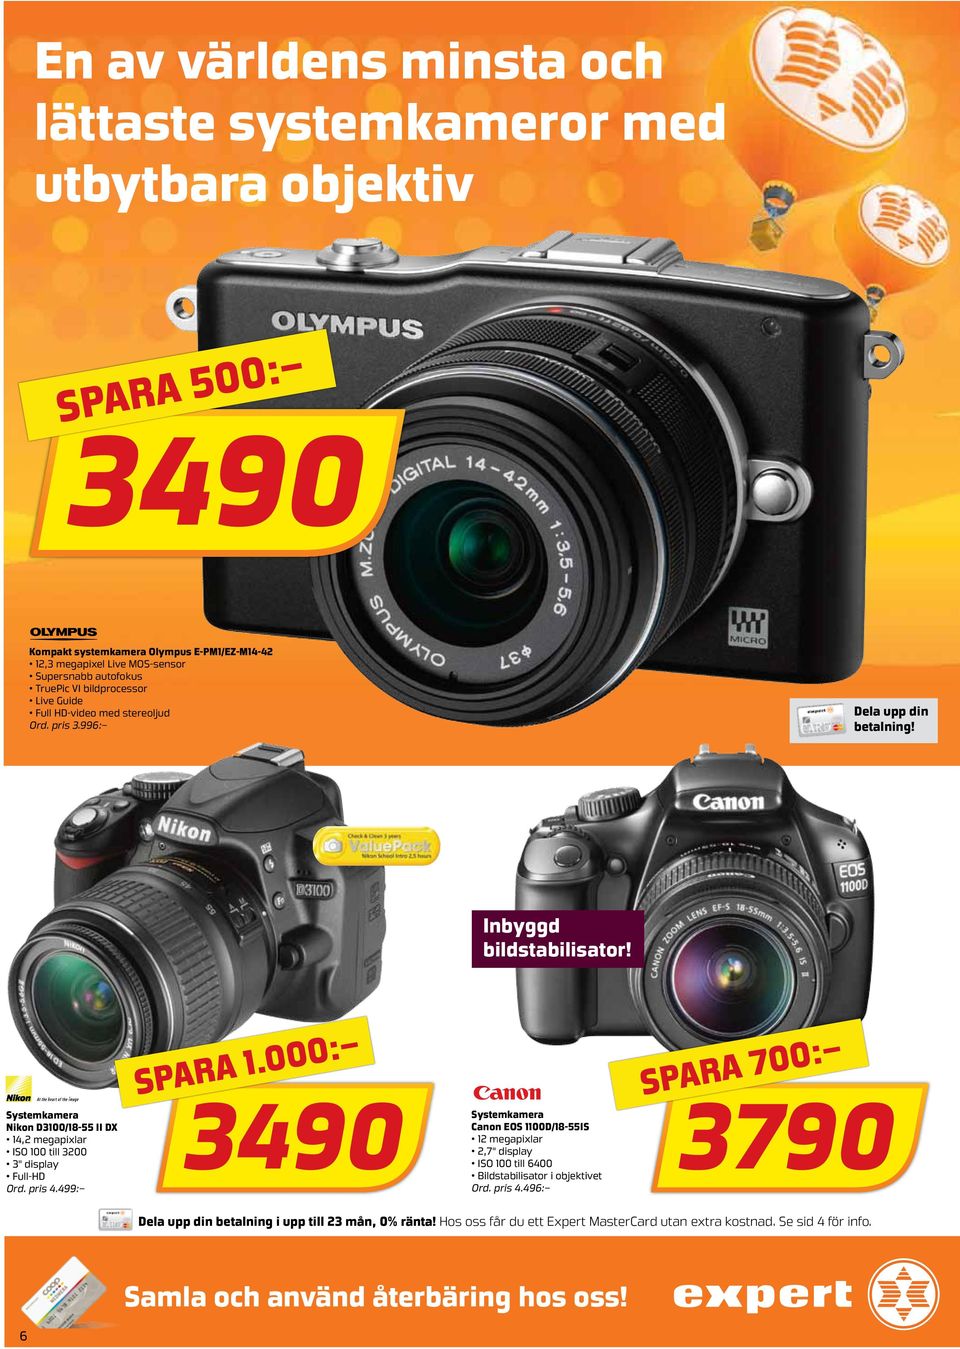 Inbyggd bildstabilisator! Systemkamera Nikon D3100/18-55 II DX 14,2 megapixlar ISO 100 till 3200 3" display Full-HD Ord. pris 4.499: 3490 spara 1.